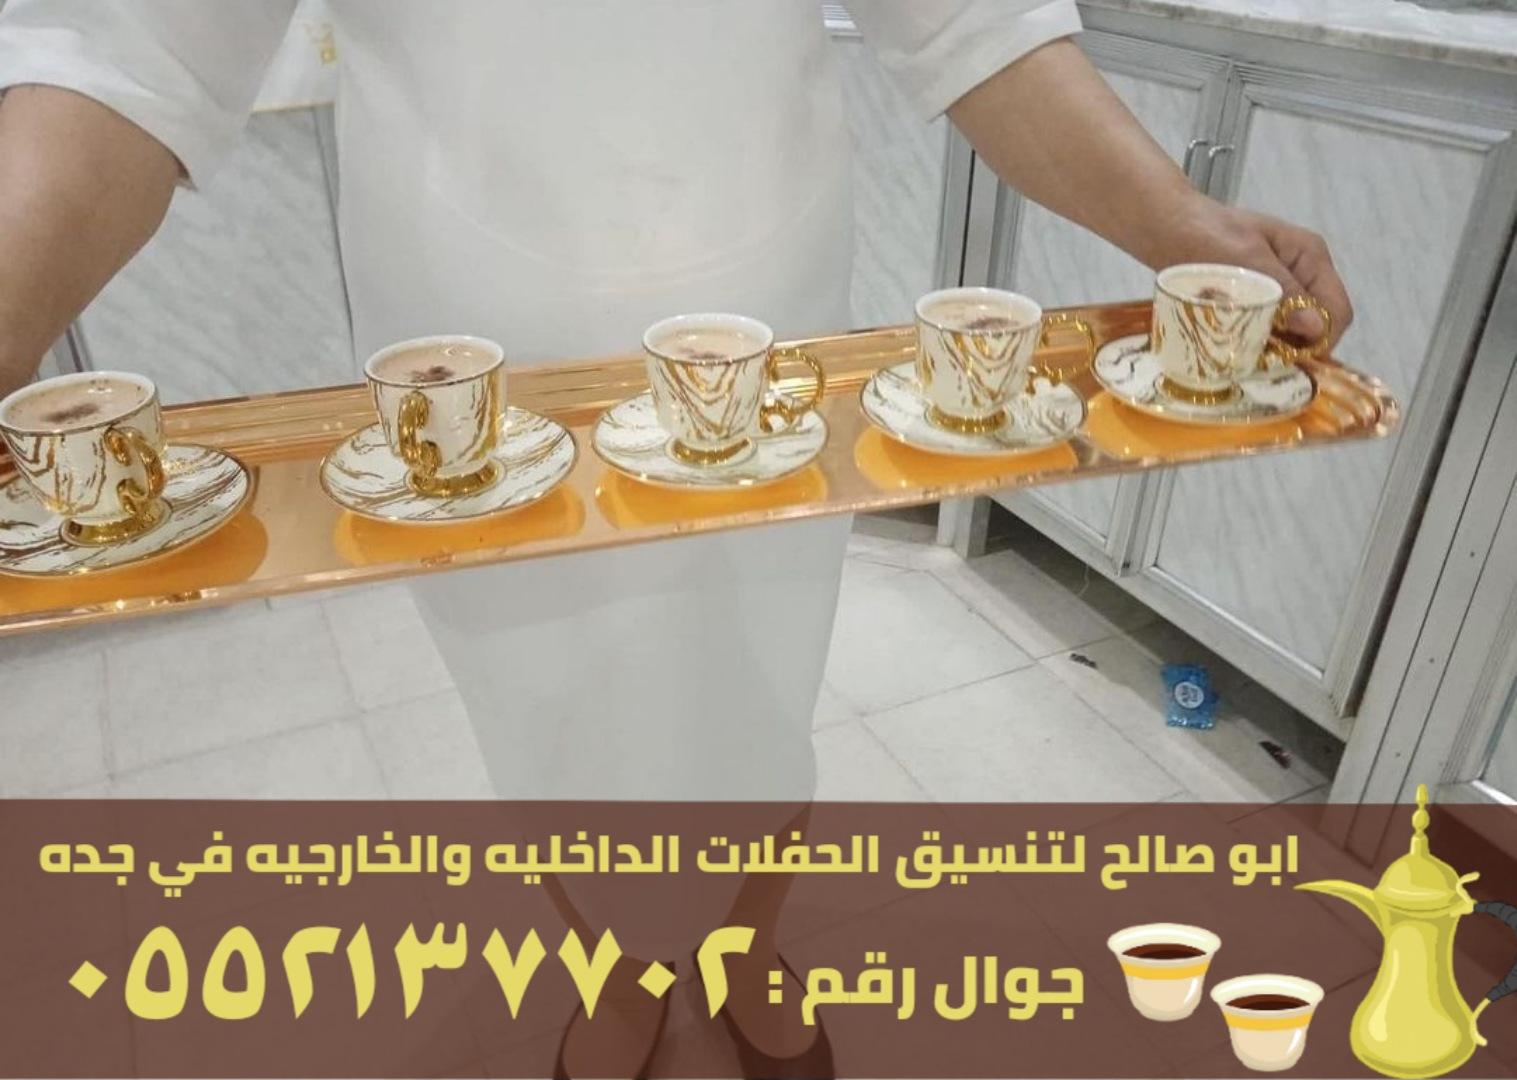 فريق صبابين قهوة للضيافة في جدة, 0552137702 367218295